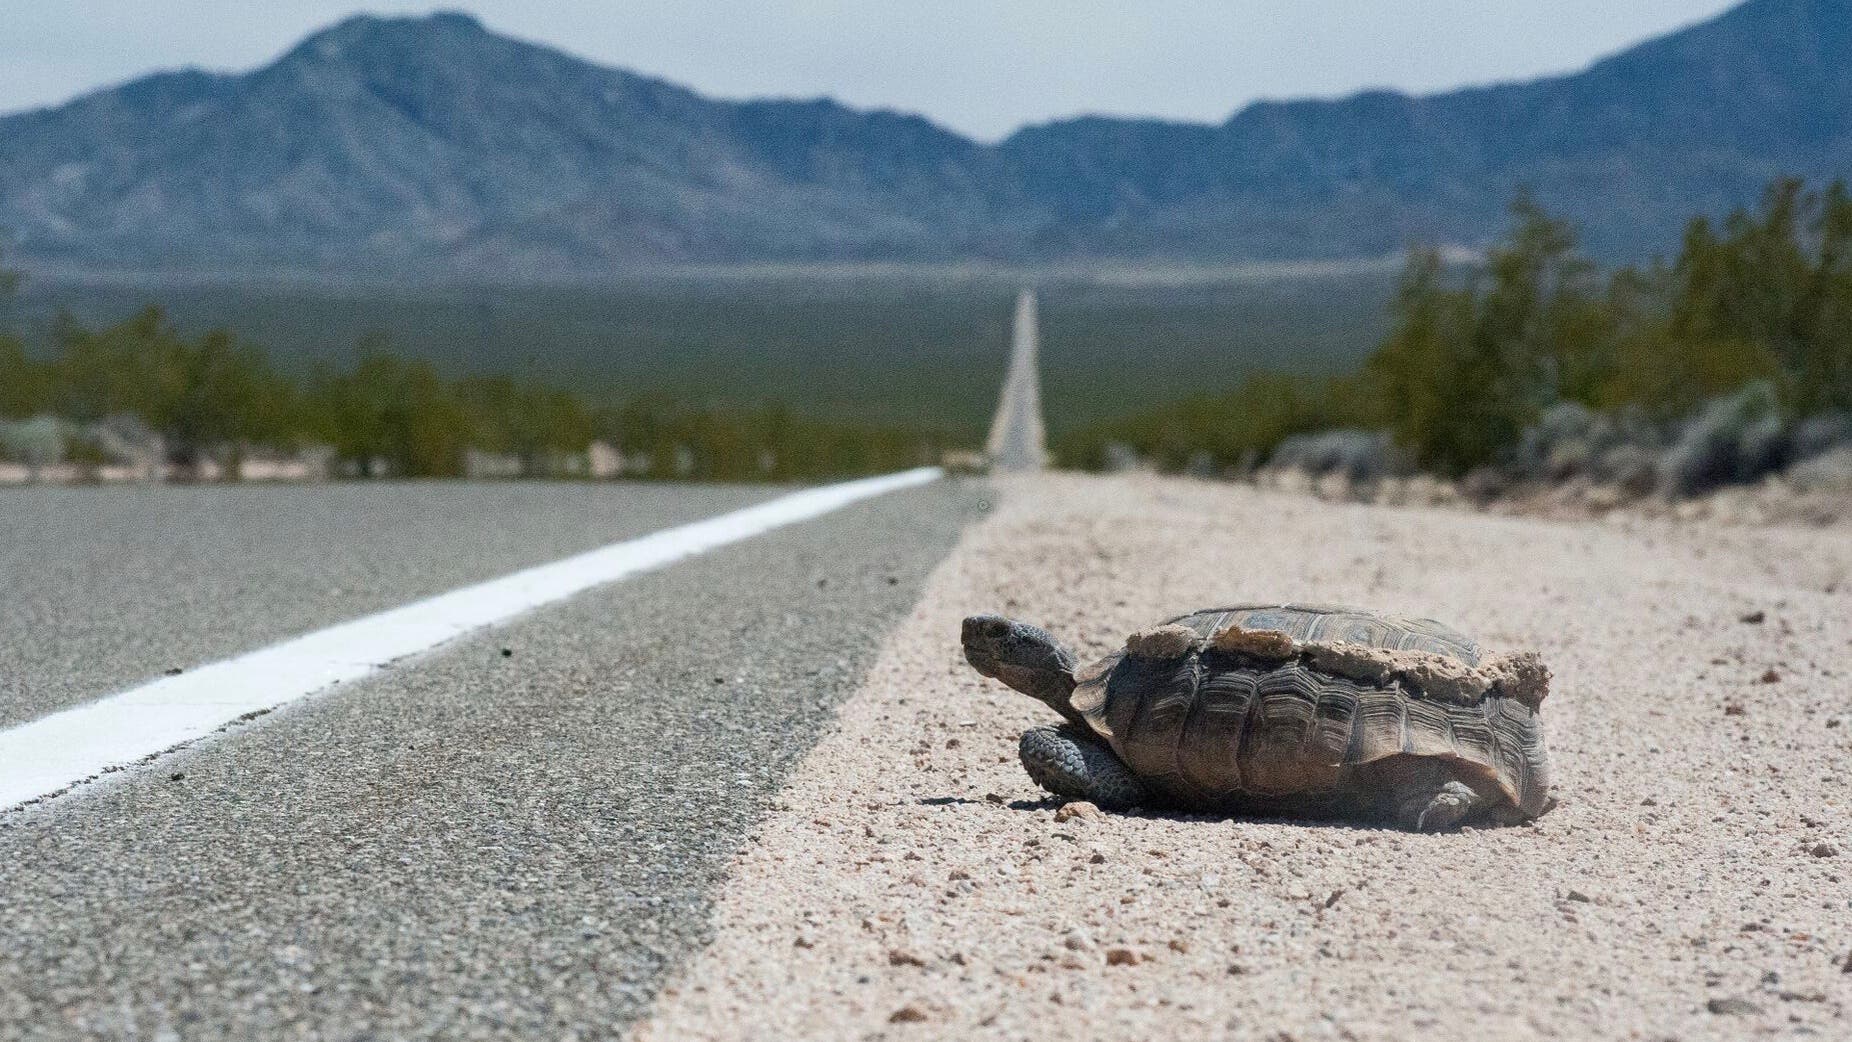 Kalifornische Gopherschildkröte am Straßenrand